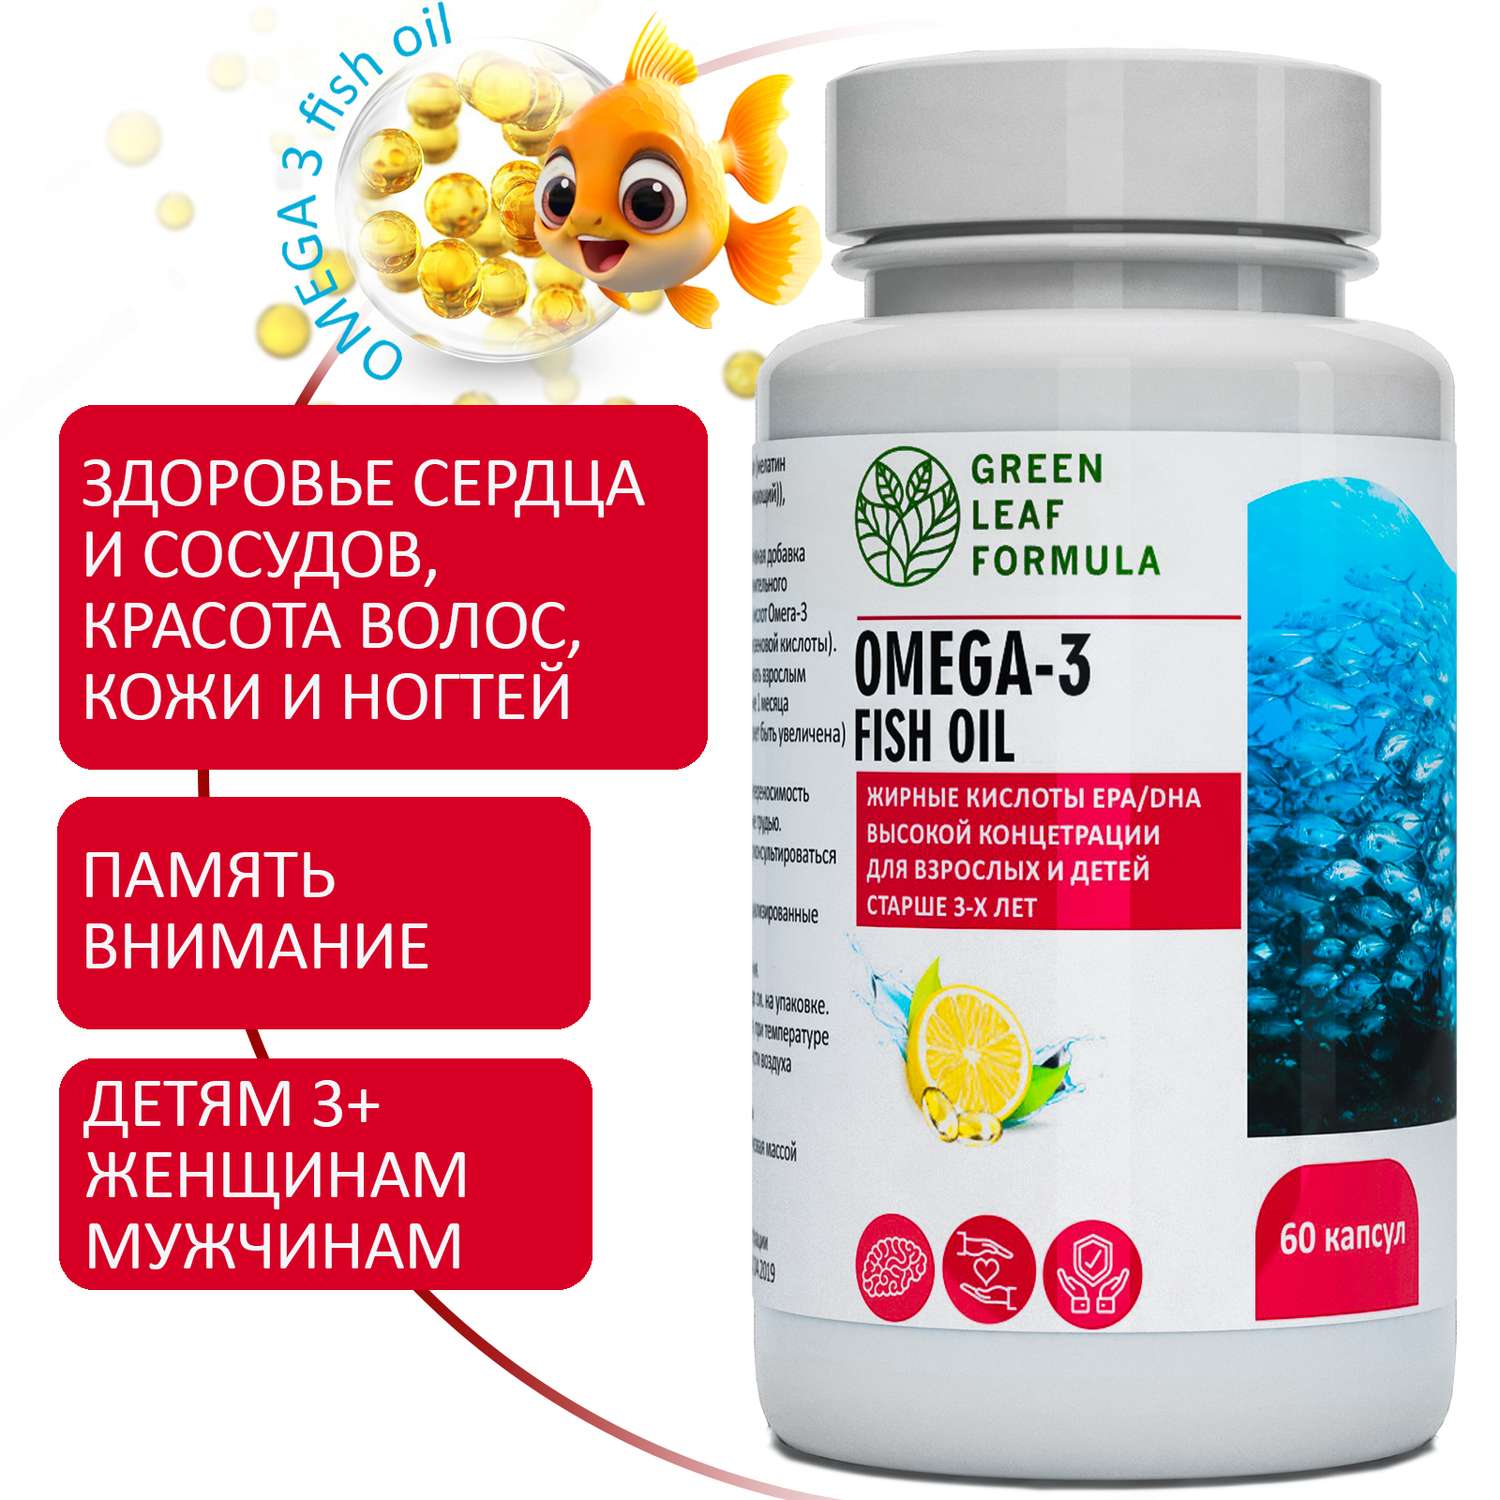 ОМЕГА 3 витамины для детей Green Leaf Formula рыбий жир в капсулах для женщин и мужчин 3 банки - фото 2